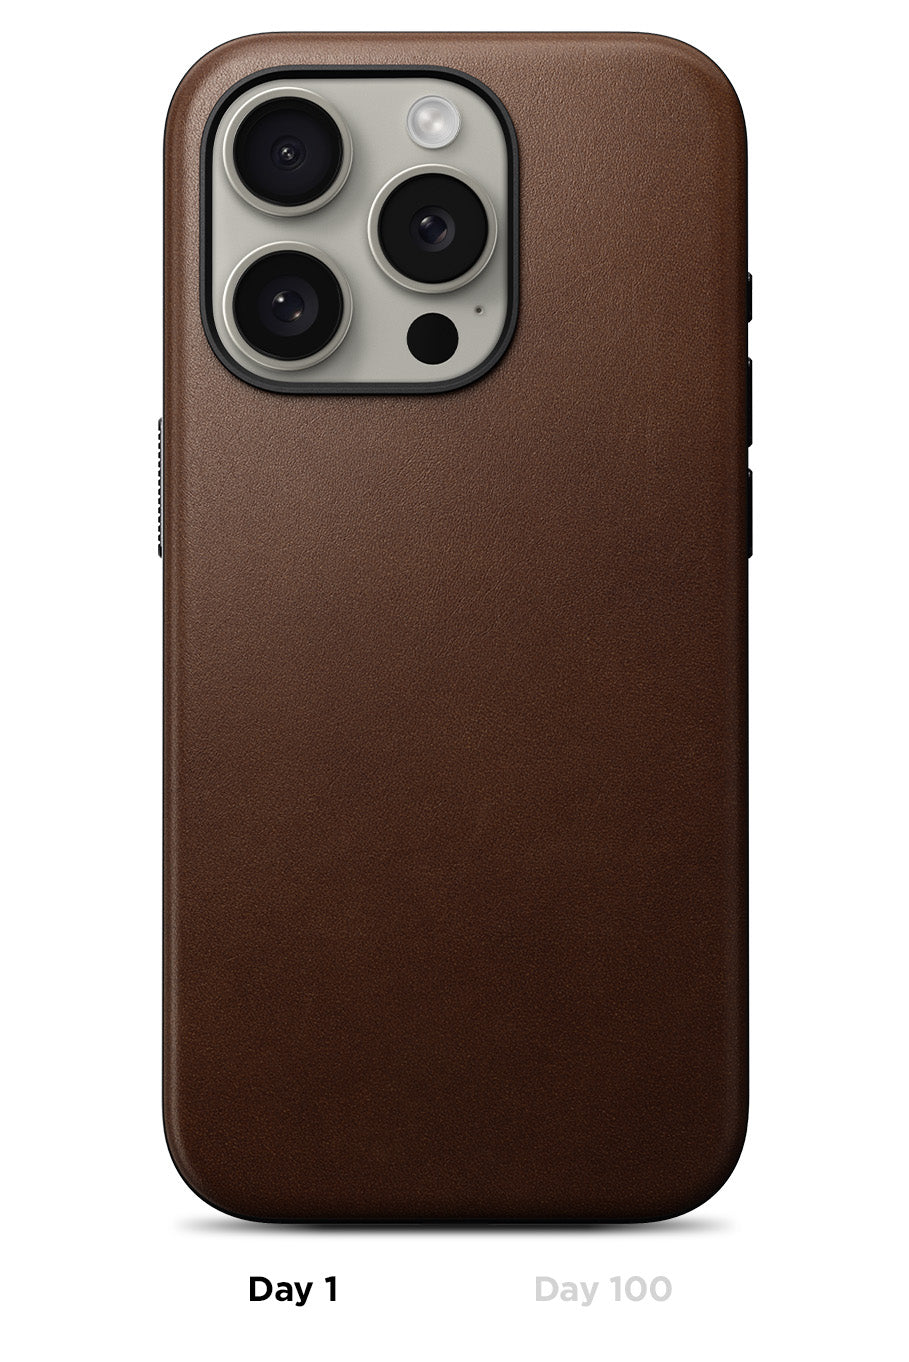 Designer IPhone Phone Cases 15 14 Pro Max Leather Hi Quality Purse